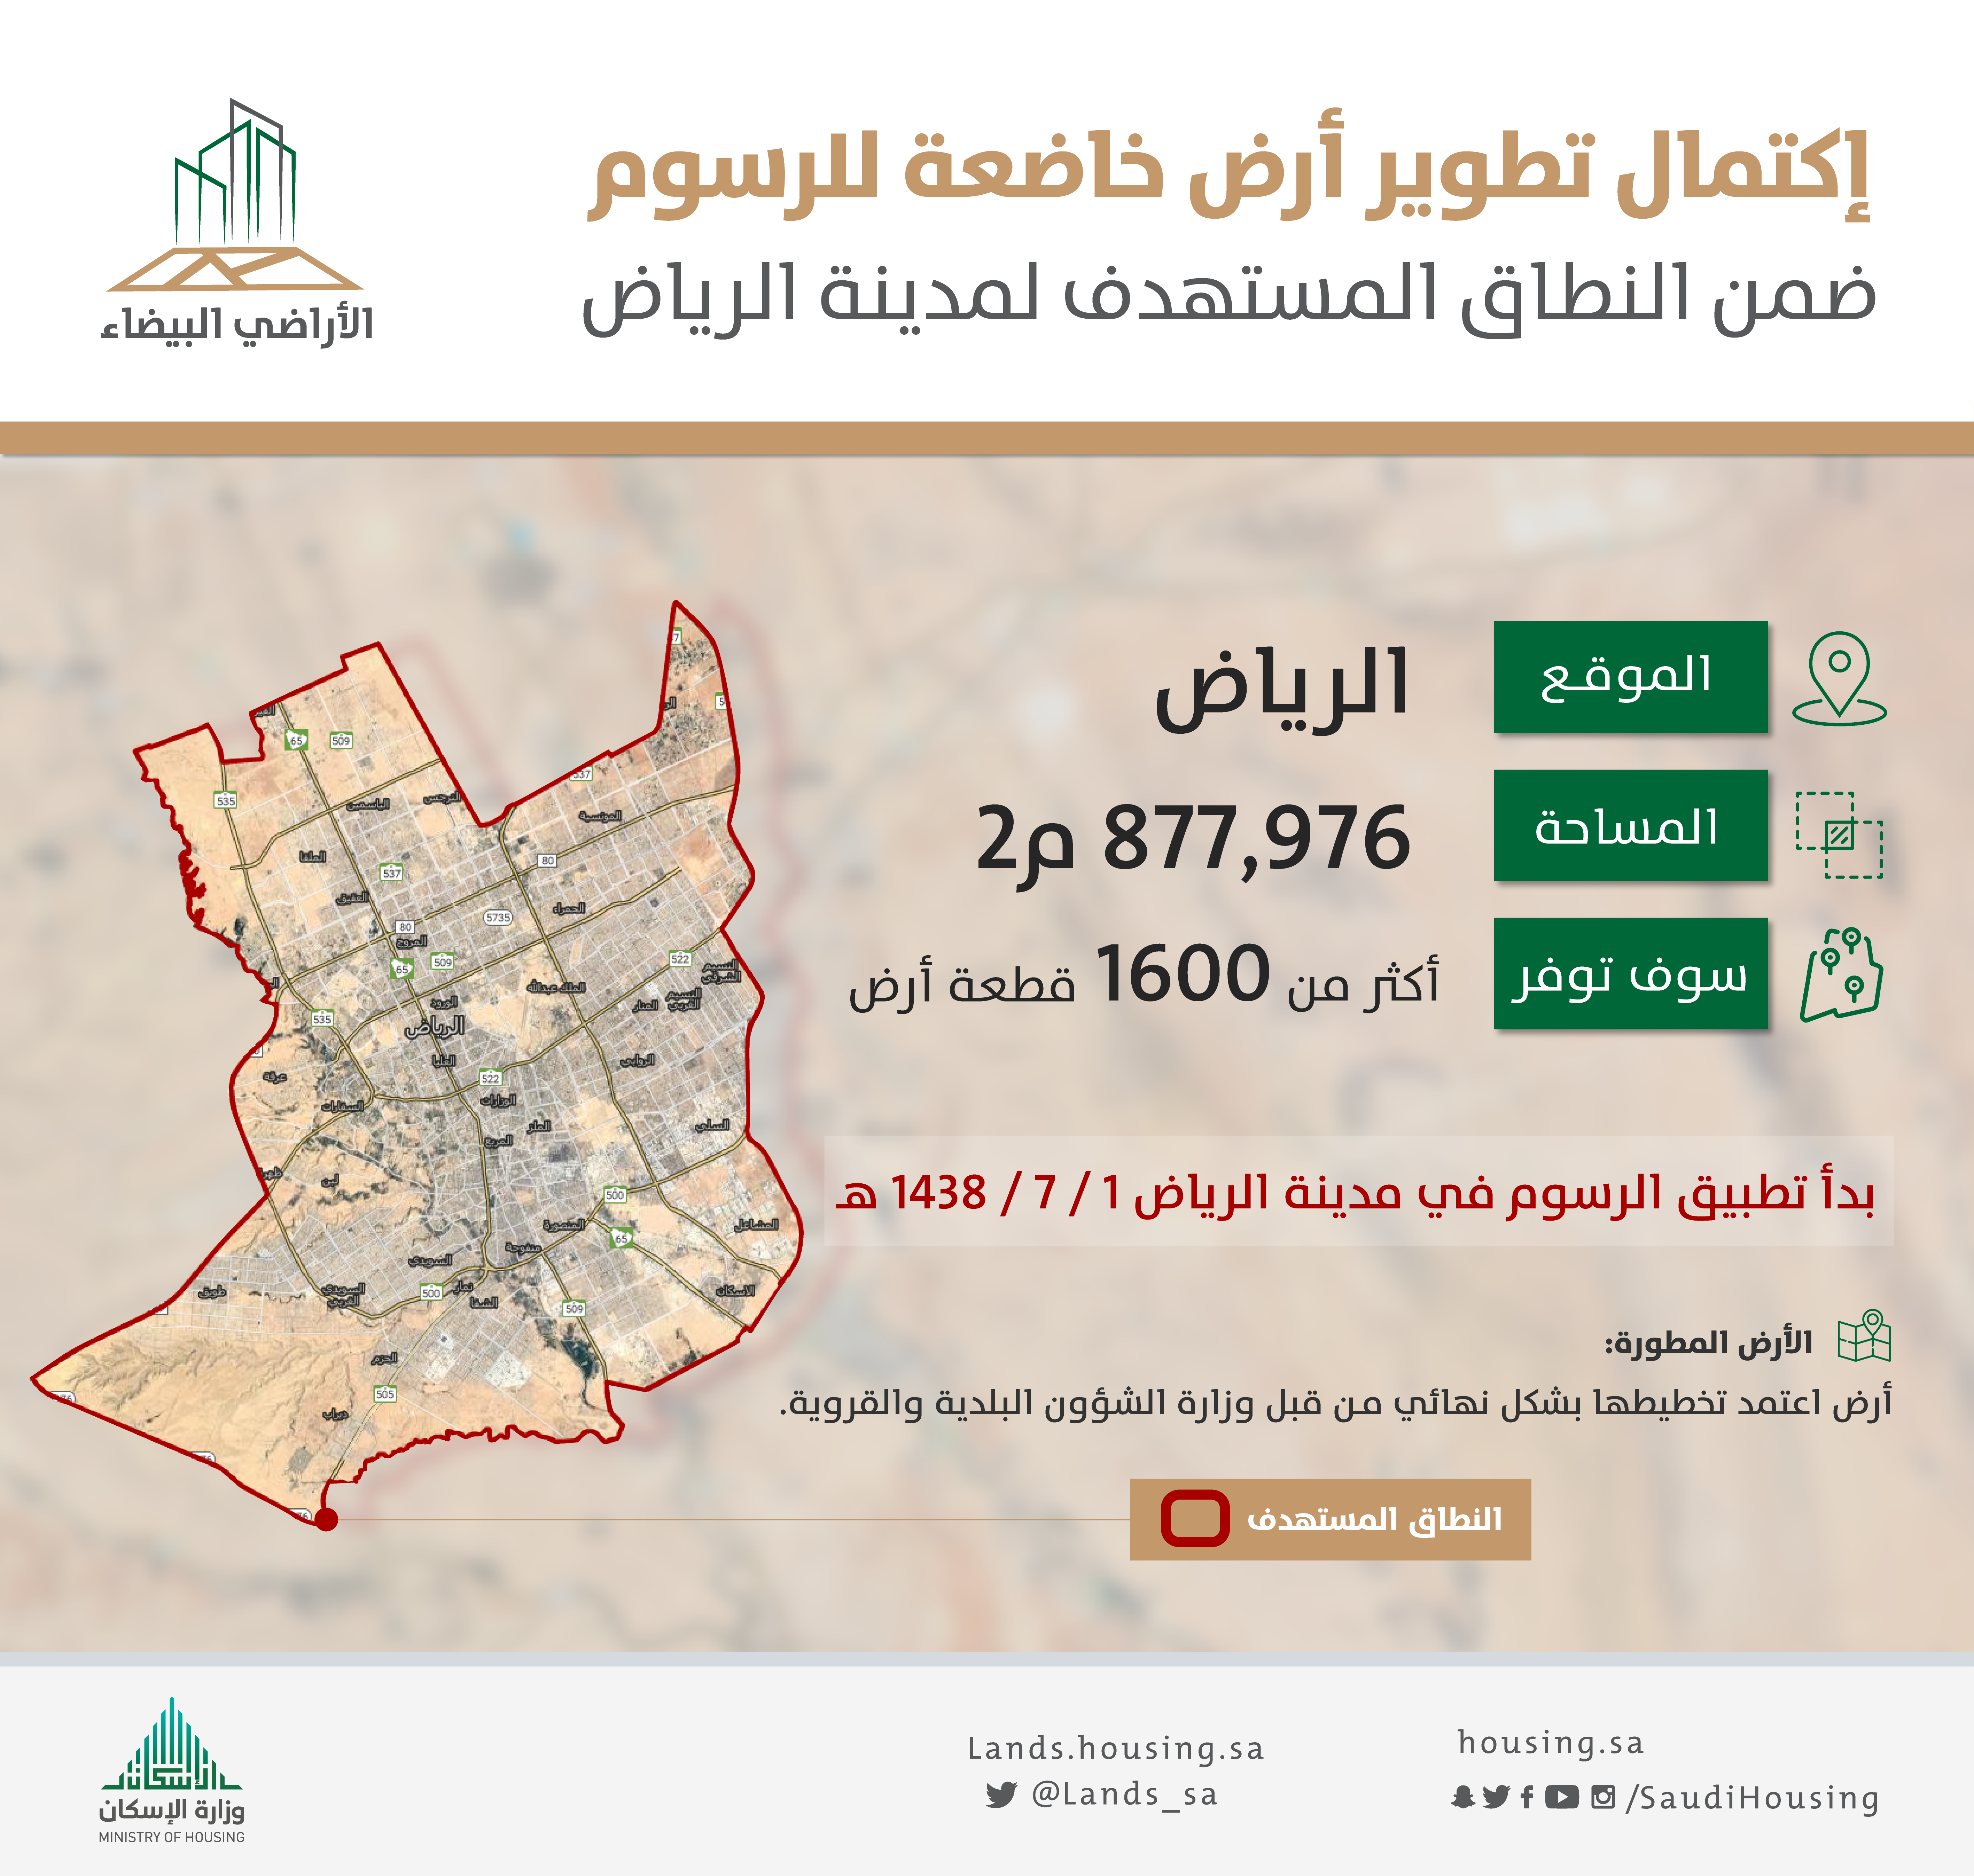 "الأراضي البيضاء": الانتهاء من تطوير 4 أراضِ توفّر 1600 قطعة سكنية من قبل ملاكها في الرياض